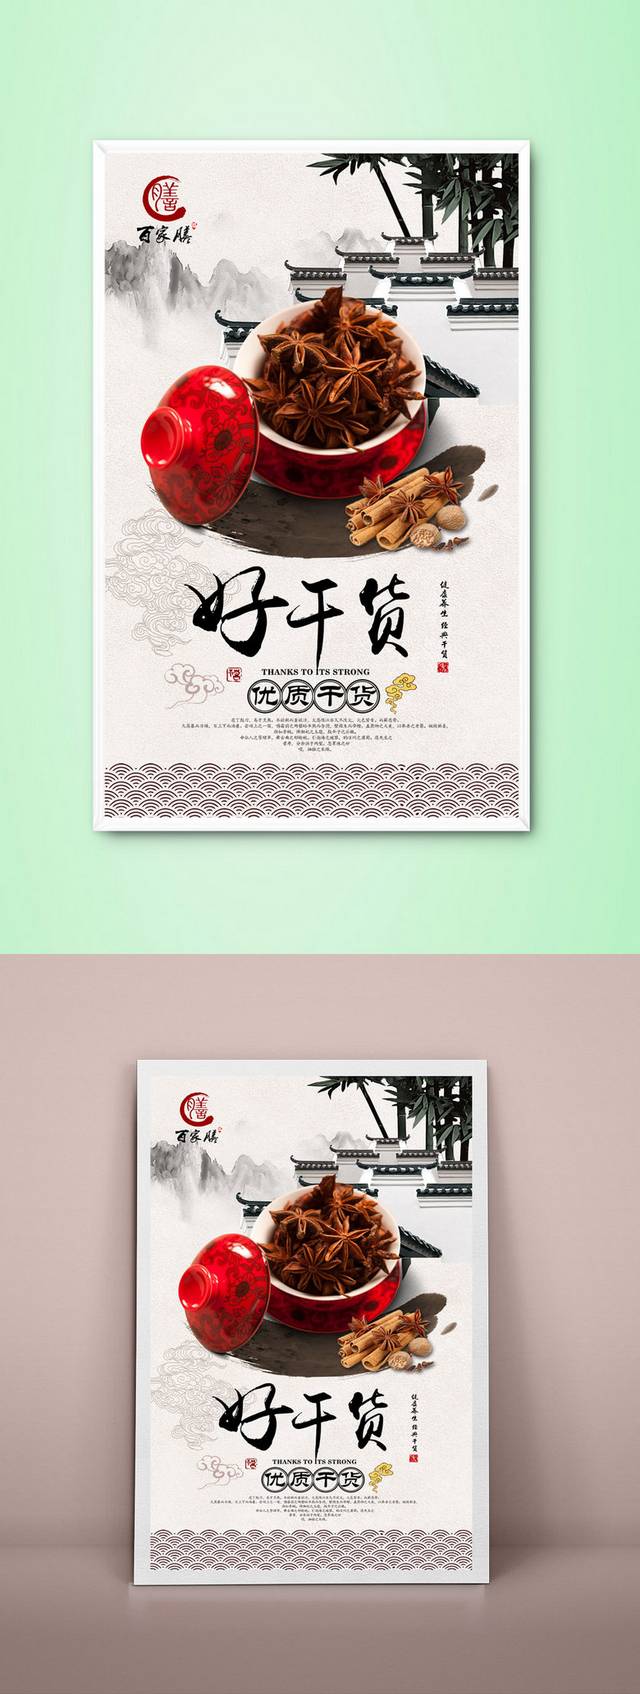 经典中国风干货海报设计